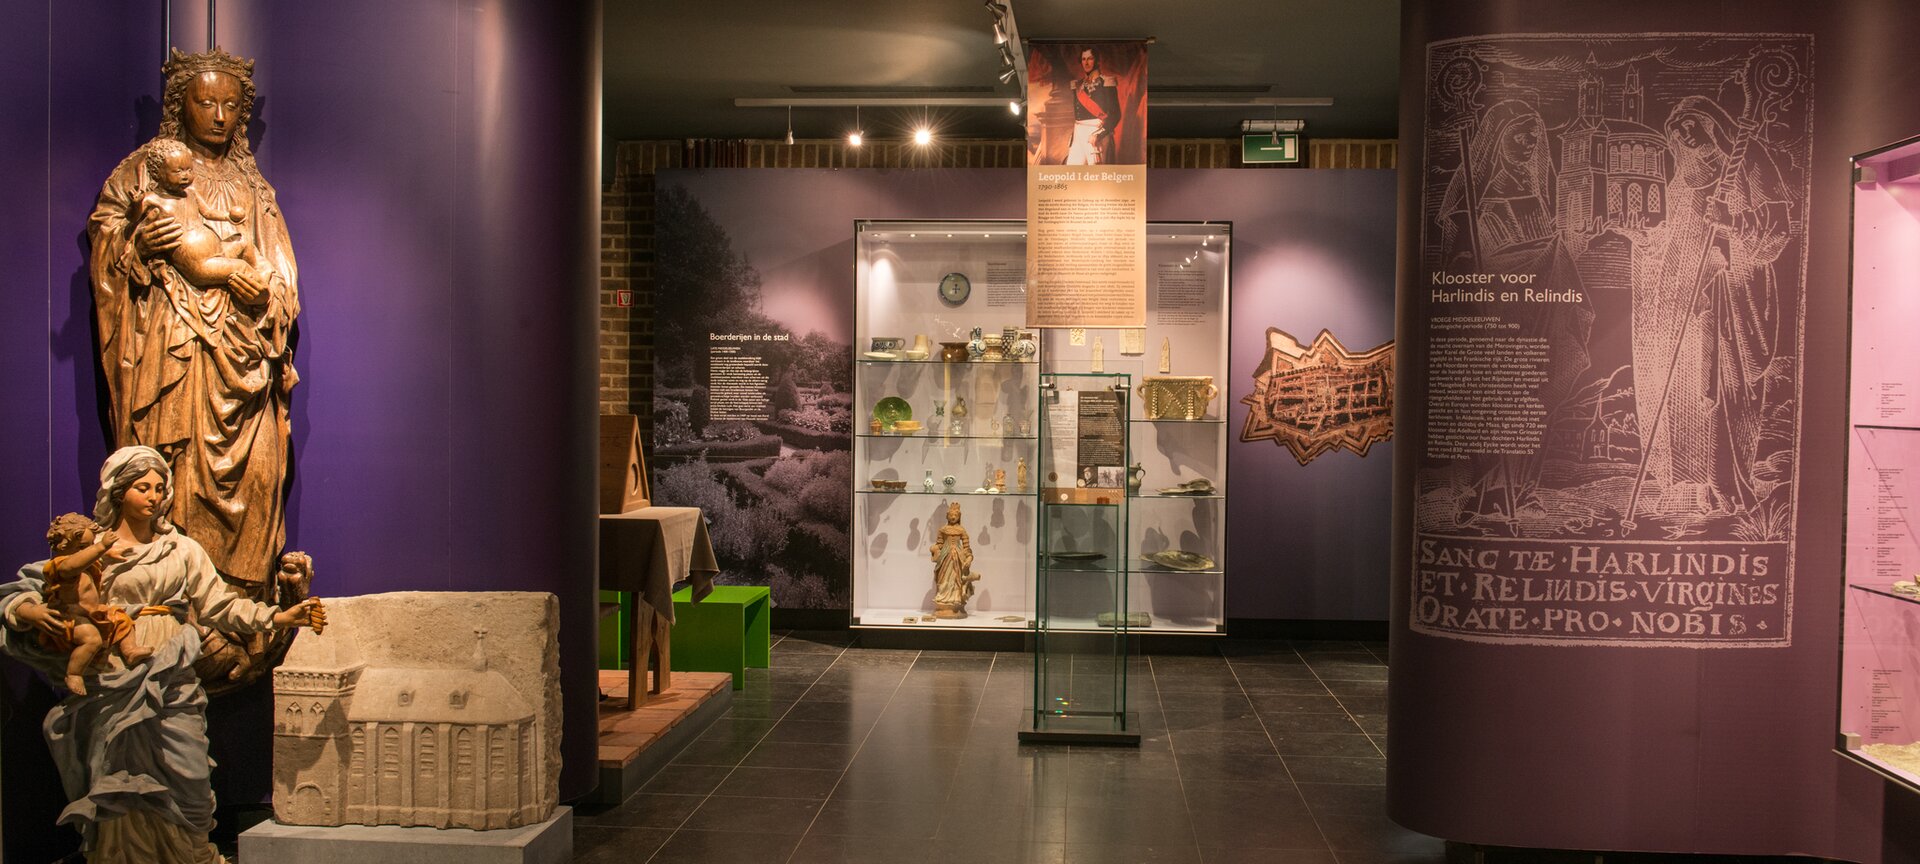 Regionaal Archeologisch Museum - Reg. archeologische museum Maaseik